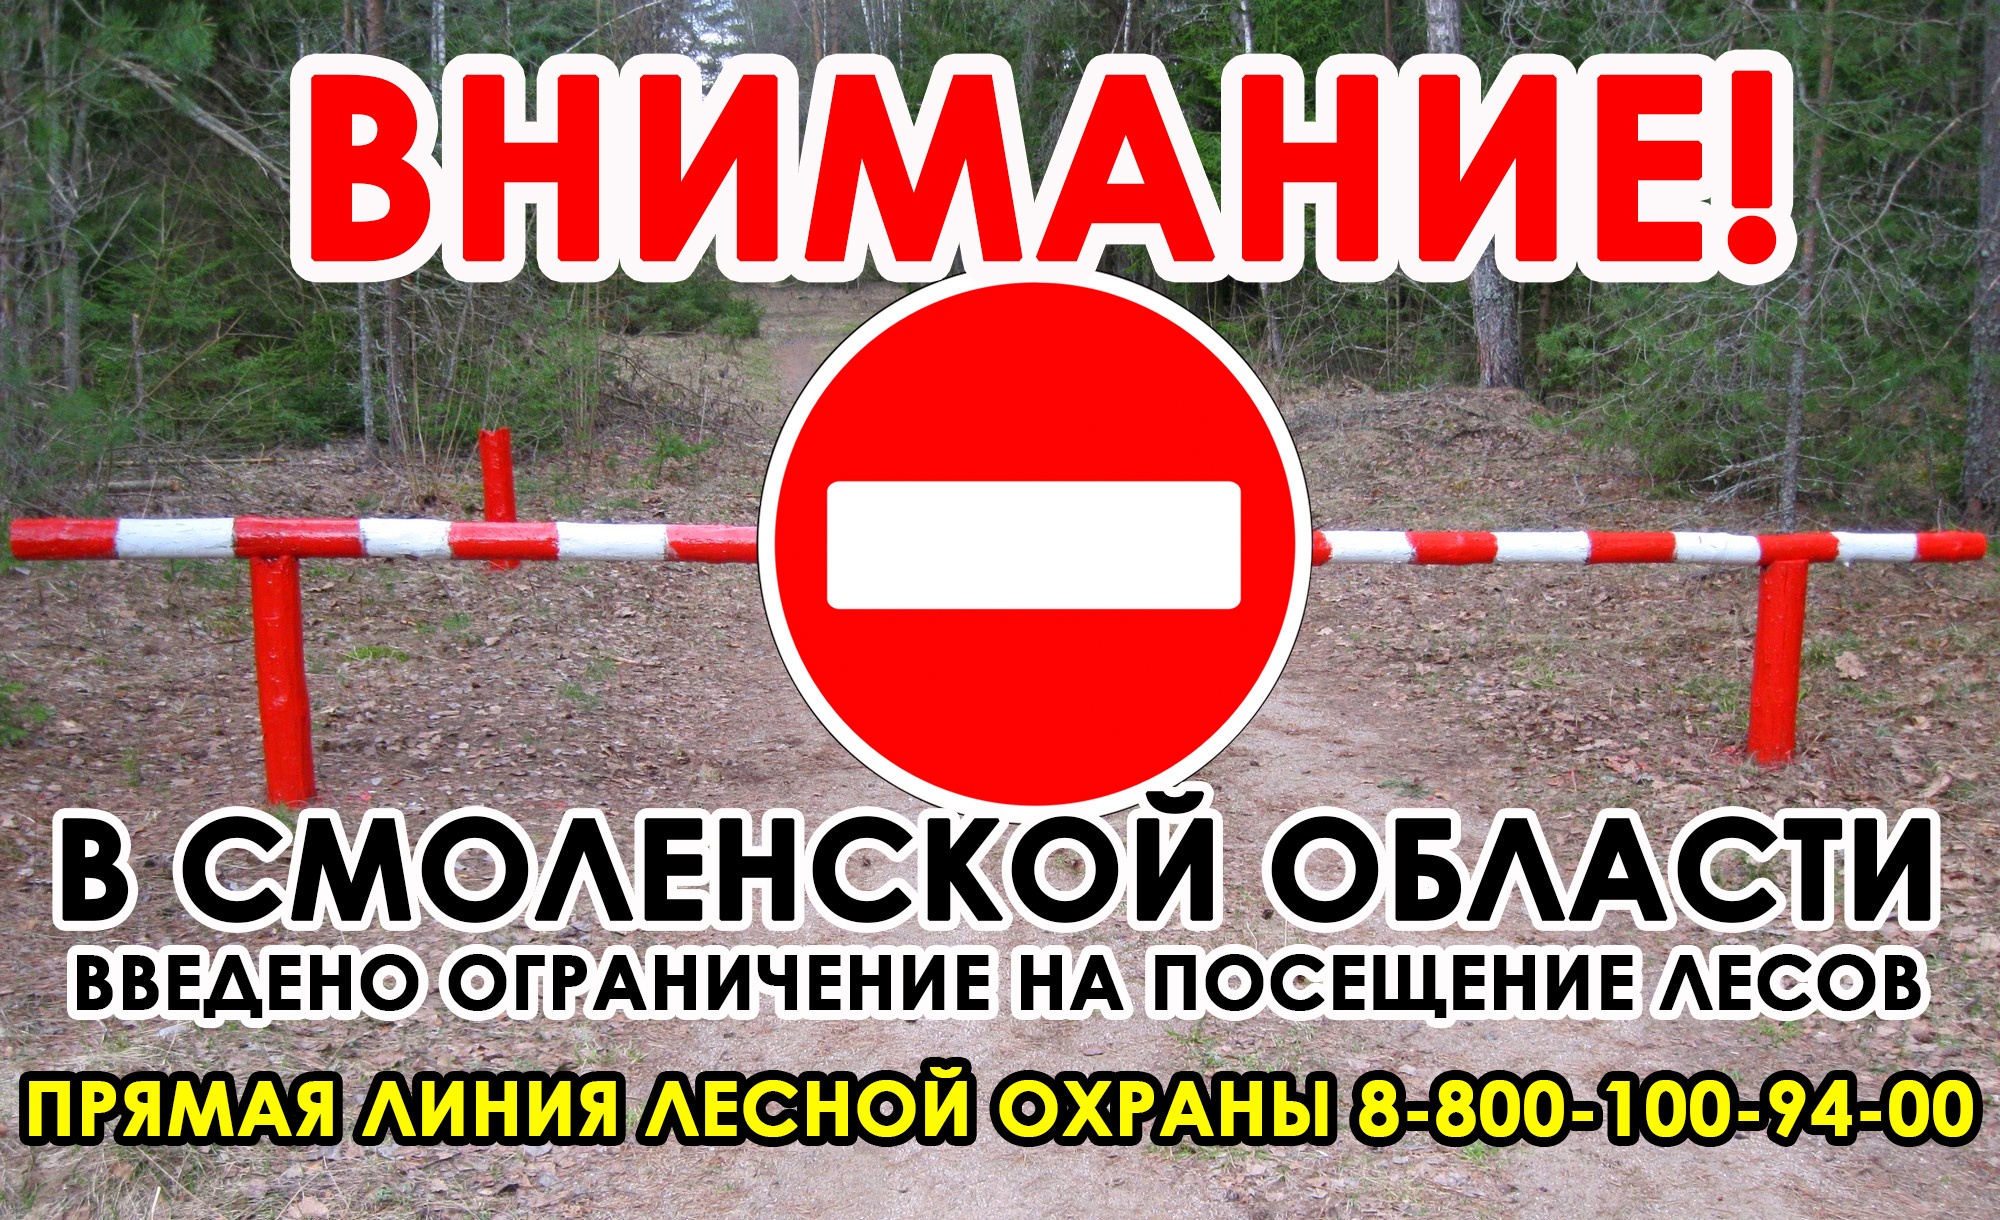 В Смоленской области ввели ограничение на посещение лесов